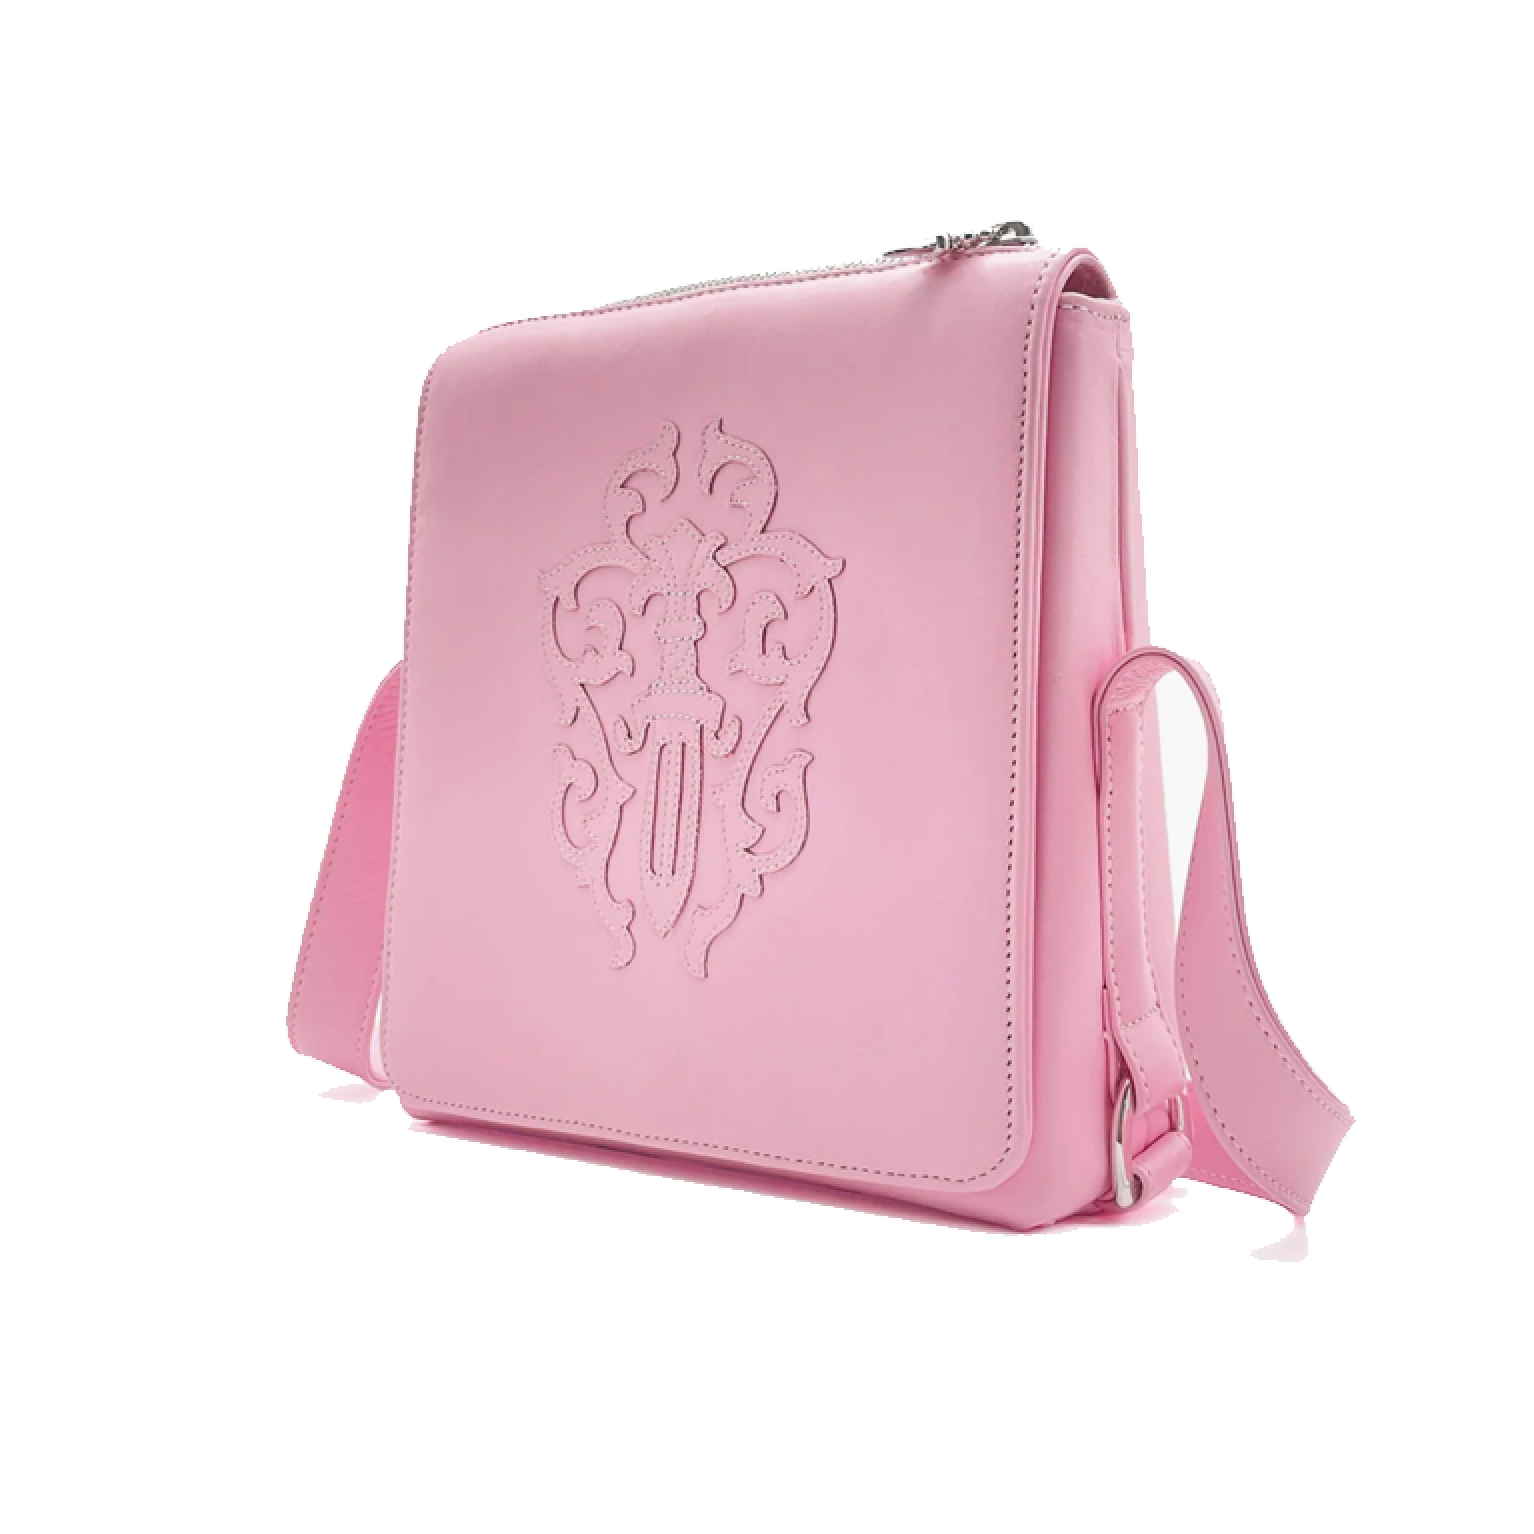 Chrome Hearts Shoulder Bag Pink